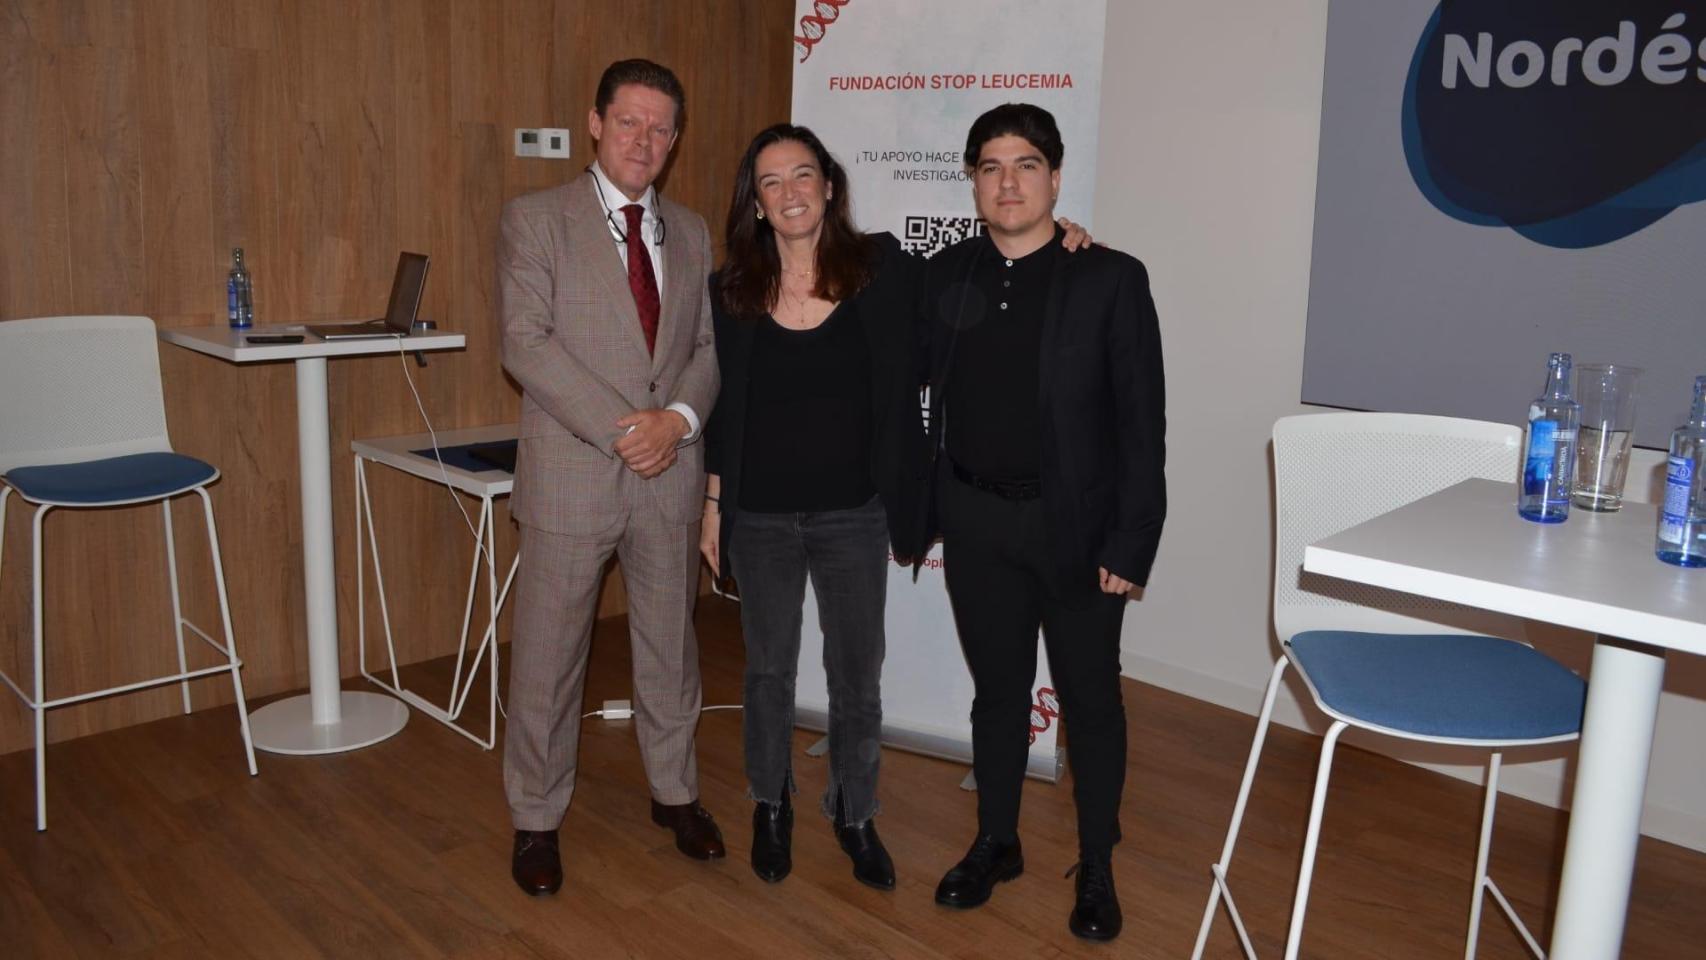 Nordés Club Empresarial de A Coruña acoge una jornada de la Fundación Stop Leucemia